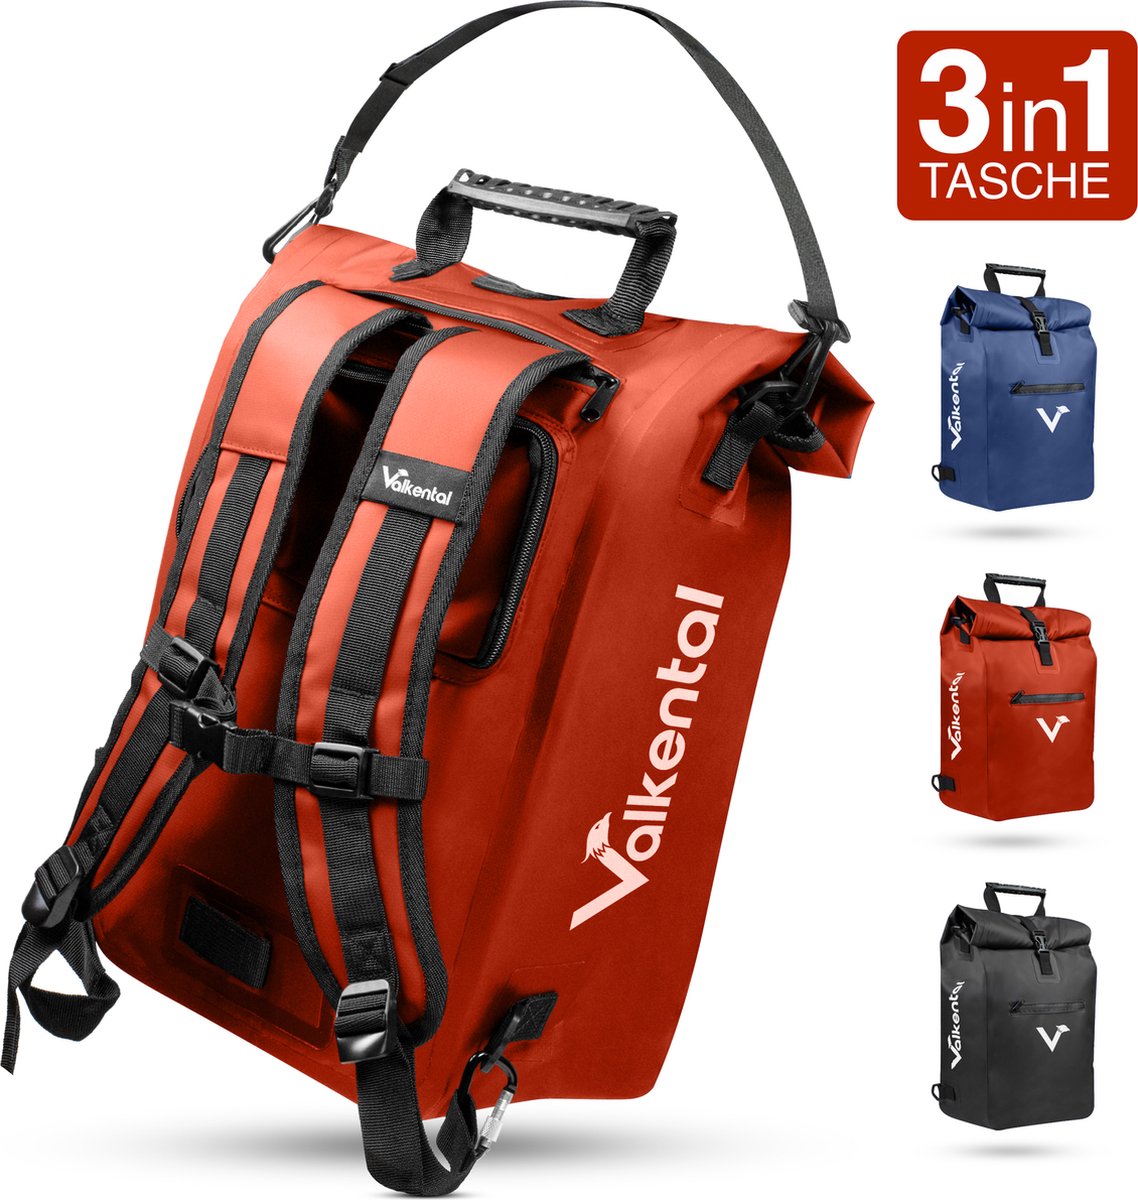 Valkental - 3in1 fietstas - Rood - Geschikt als bagagetas, rugzak en schoudertas - Waterdicht & Reflecterend - 23L